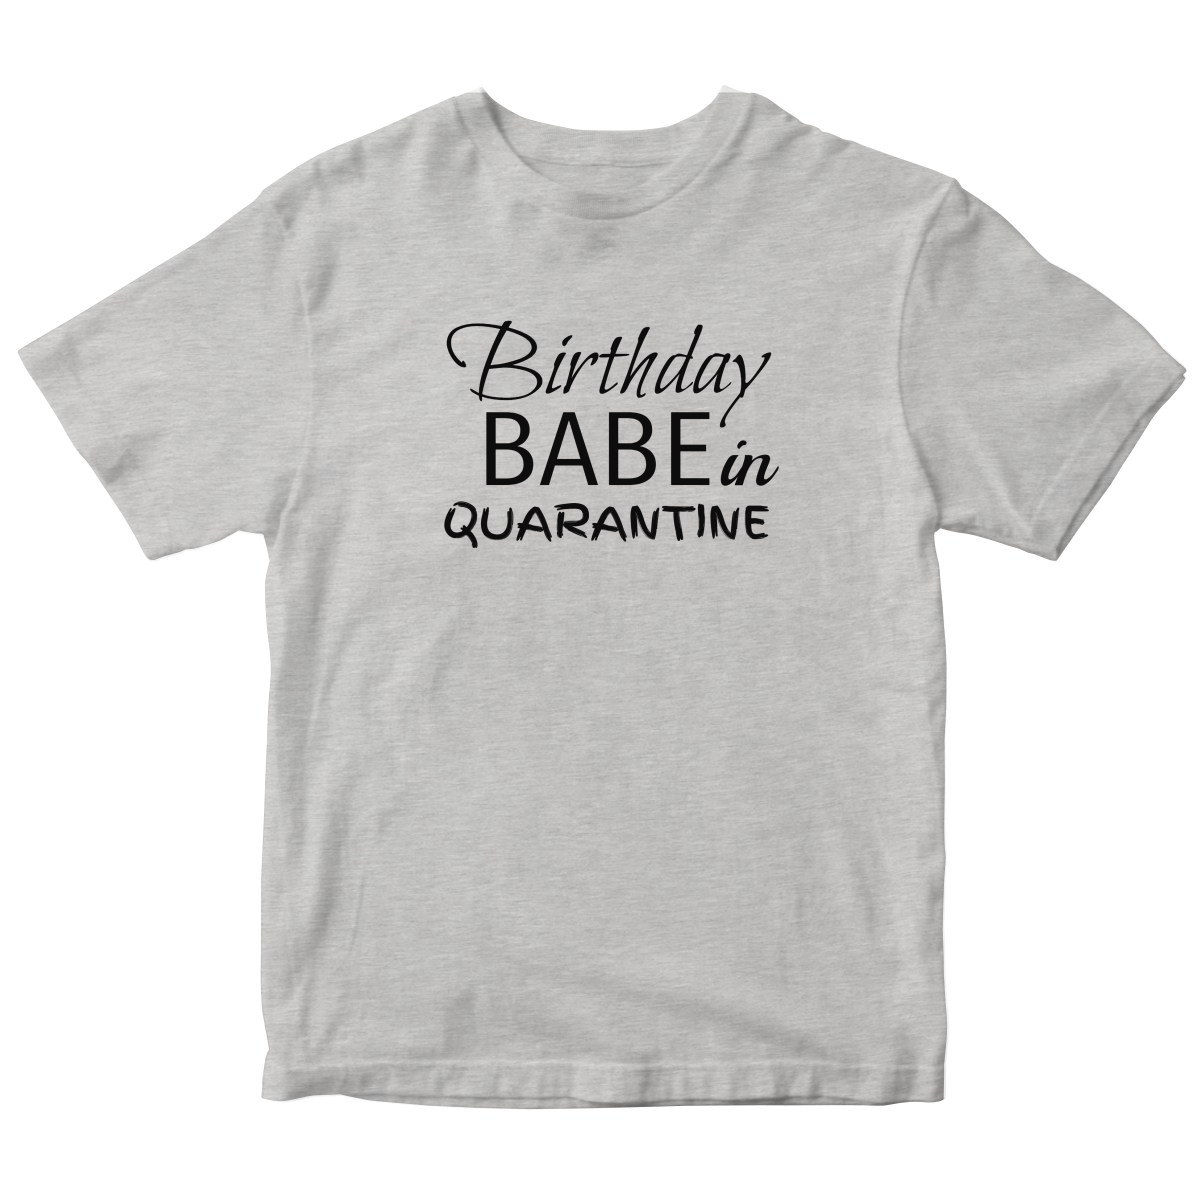 Birthday Babe in Quarantine Kids T-shirt | Gray